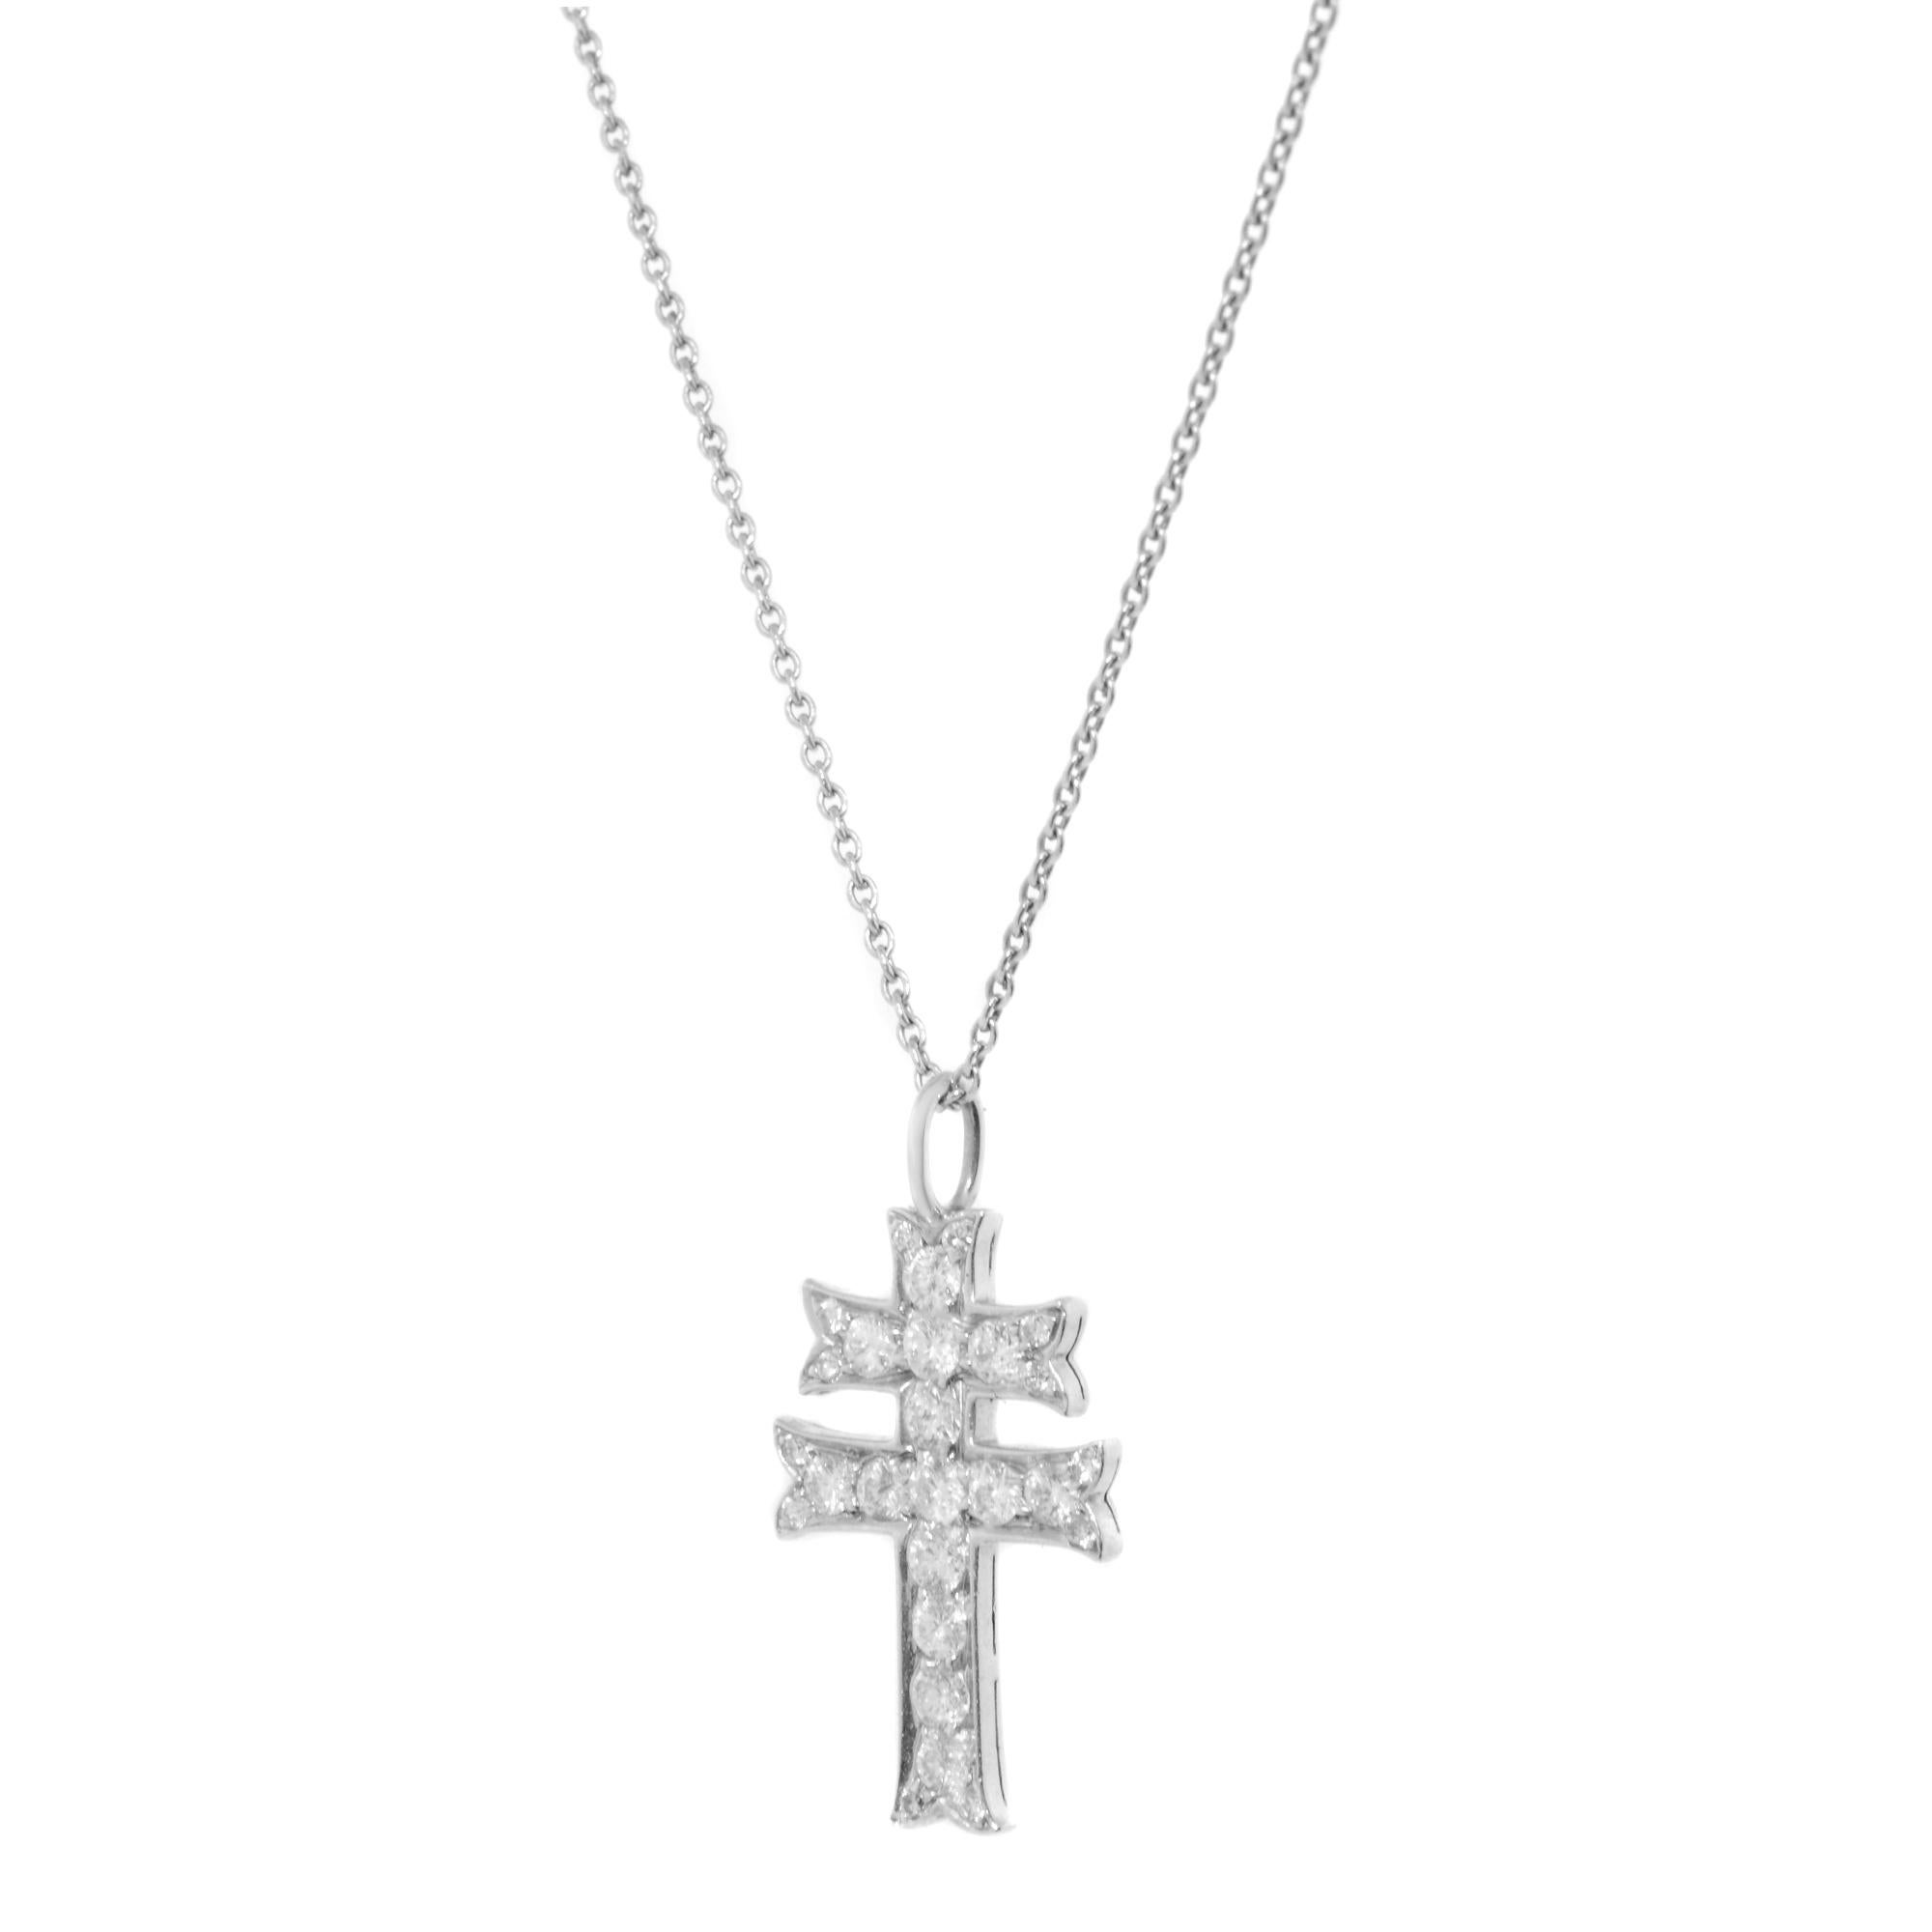 Parfois, une simple croix ne suffit pas. Ce pendentif unique en forme de croix est réalisé en platine avec des diamants ronds sertis en pavé. La croix mesure 10 mm de haut en bas et la chaîne mesure 16 pouces. Que vous recherchiez un symbole de